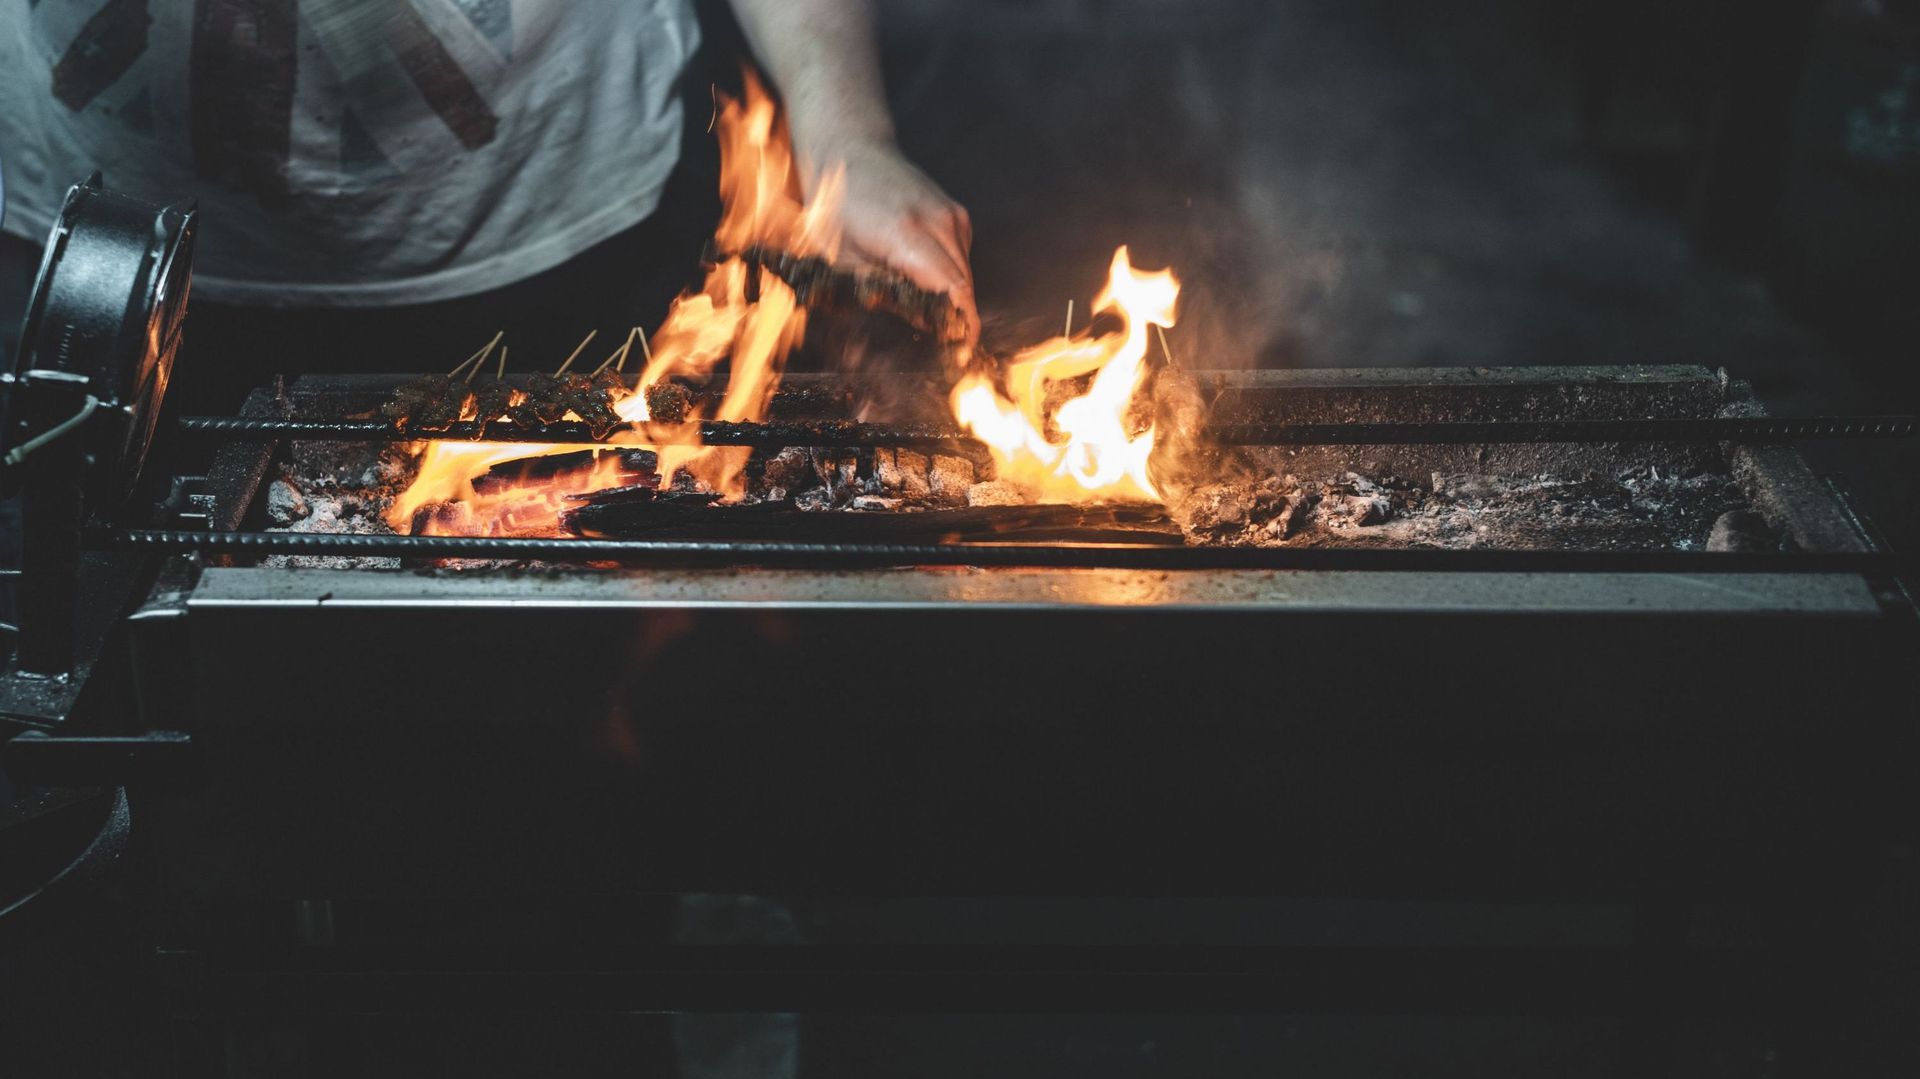 Comment éviter la fumée lors d'un barbecue ?